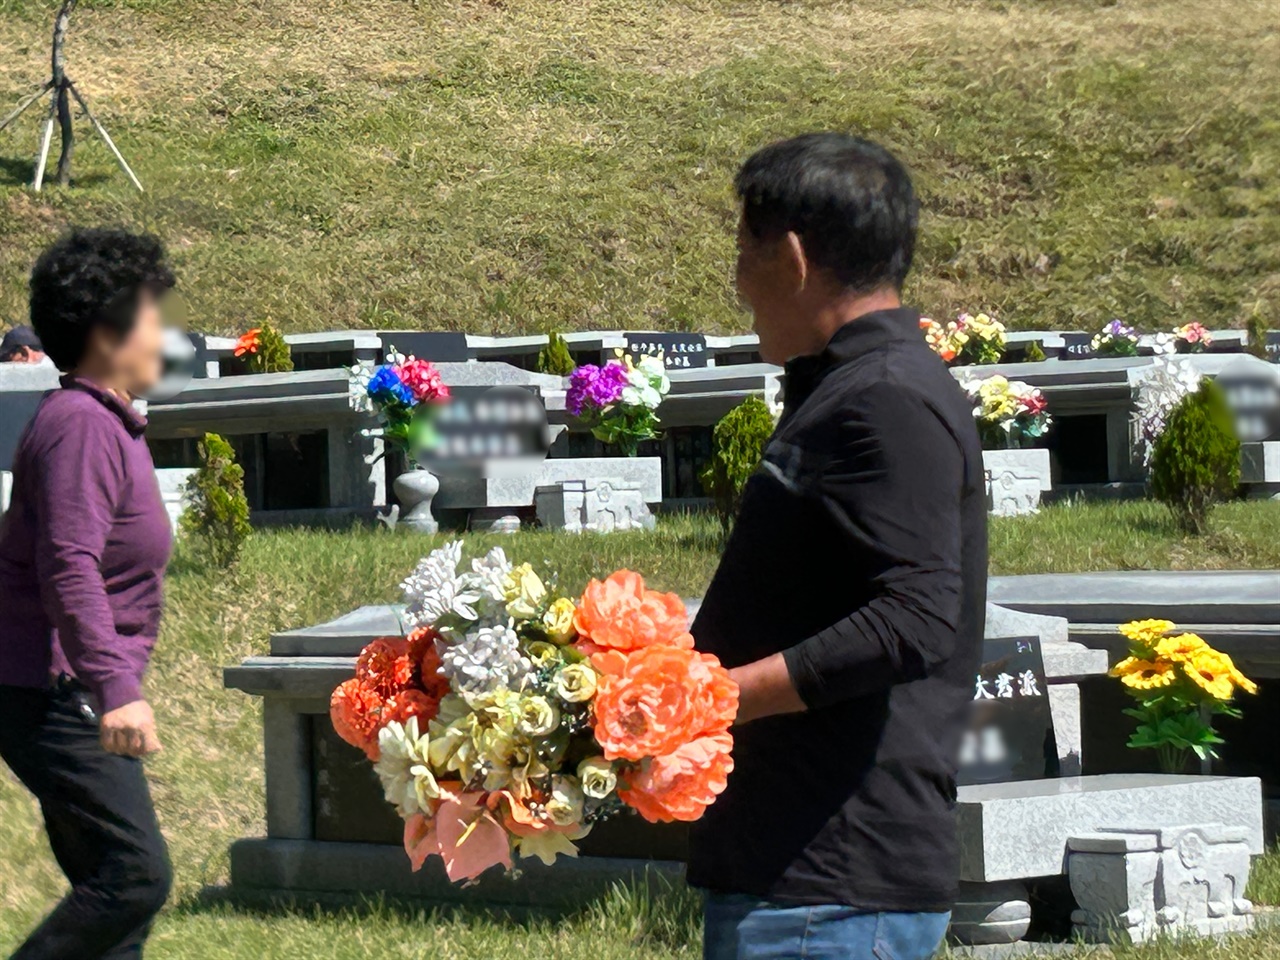 예산추모공원을 찾은 성묘객들은 산소에 있는 꽃을 새로 바꾸는 등 묘지를 돌봤으며, 성묘를 마친 가족들은 둘러앉아 식사하기도 했다.